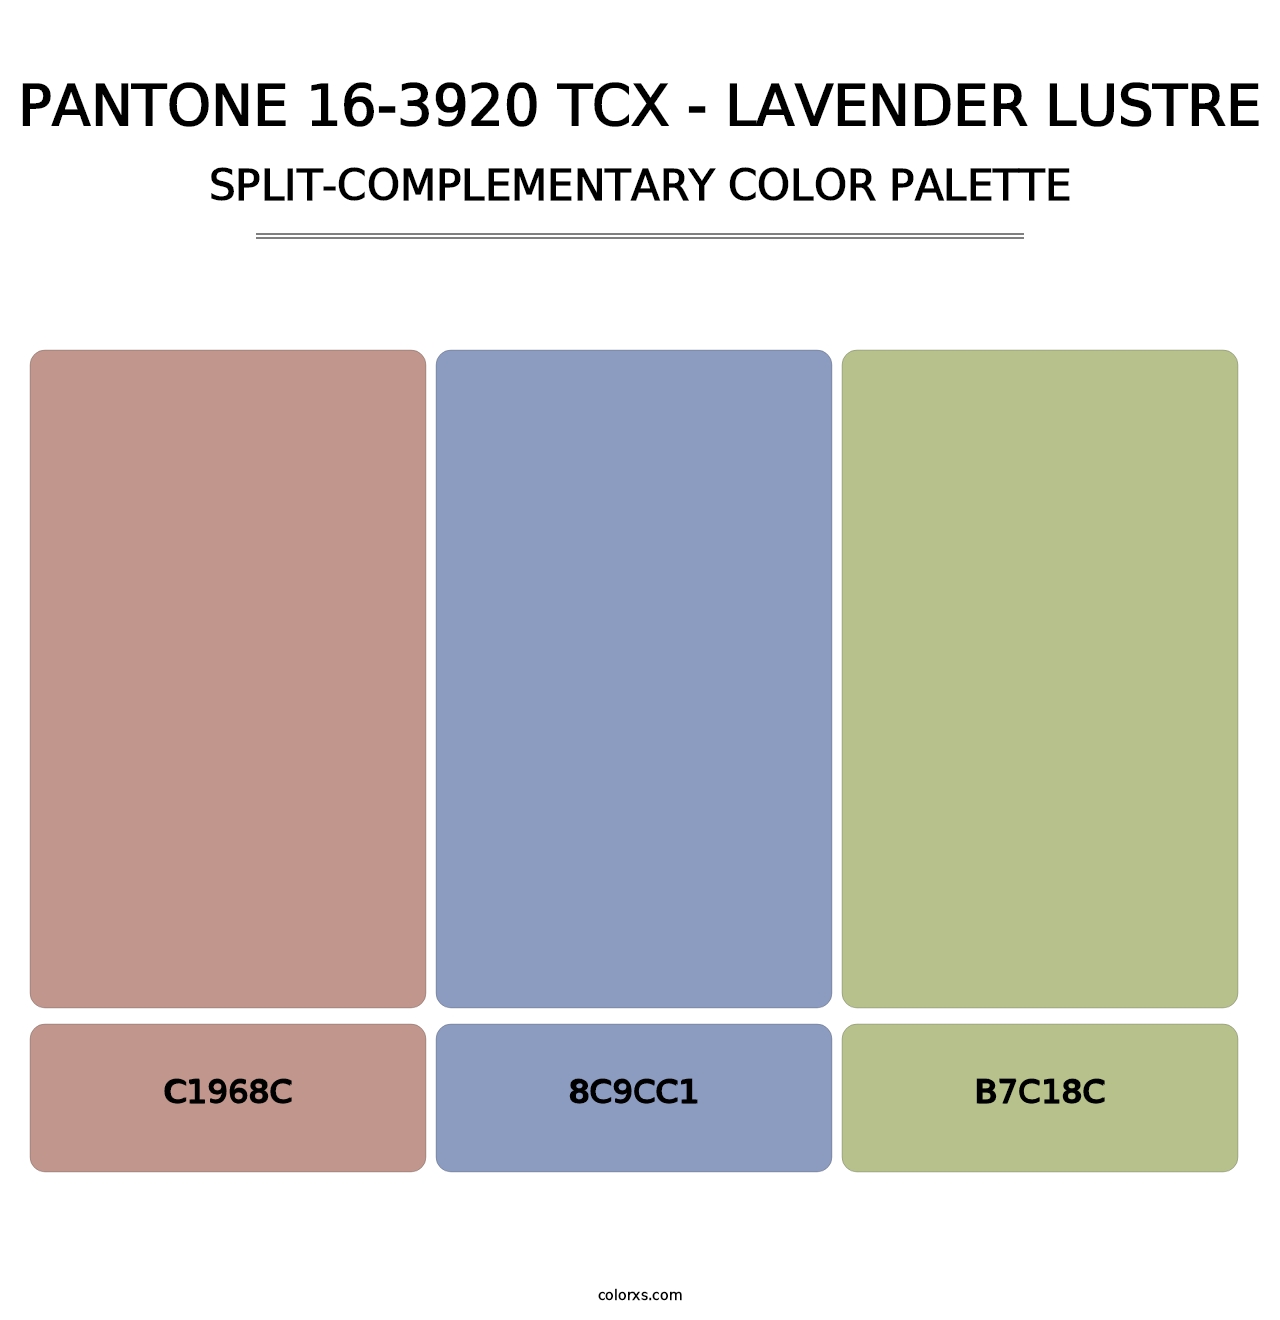 PANTONE 16-3920 TCX - Lavender Lustre - Split-Complementary Color Palette